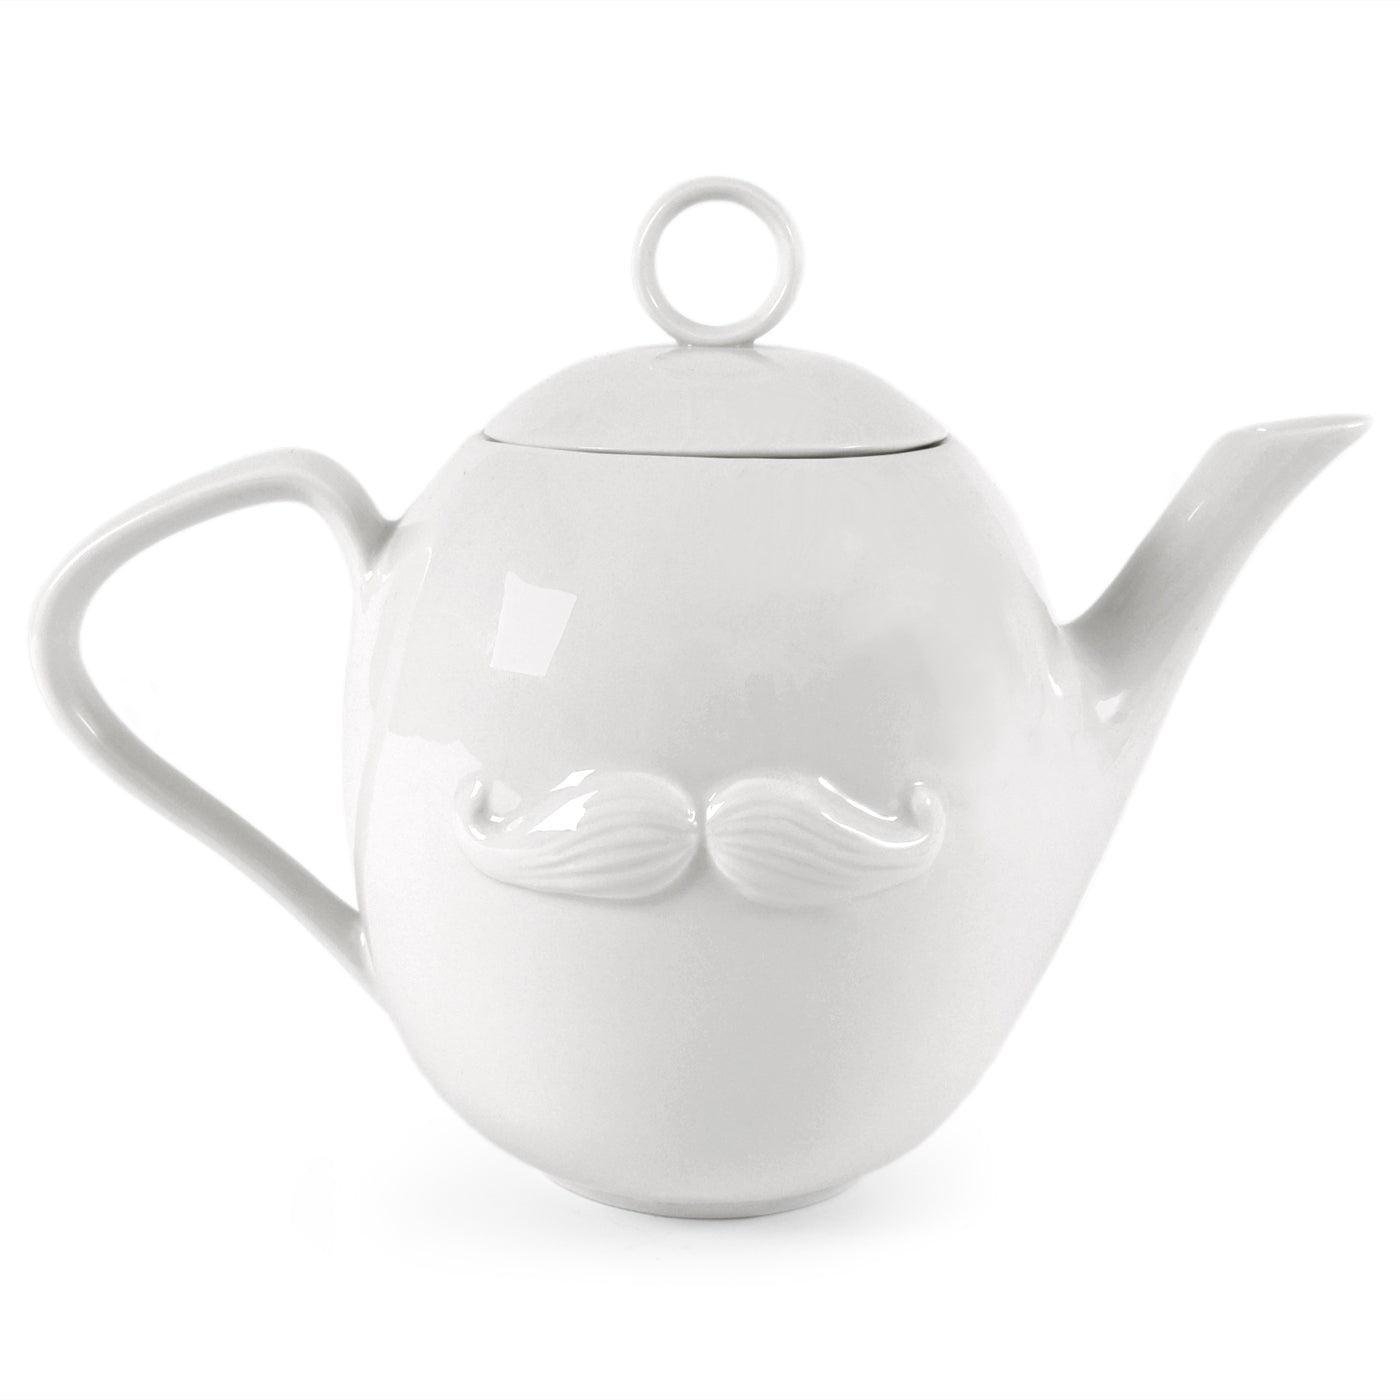 Mr. & Mrs. Muse Teapot